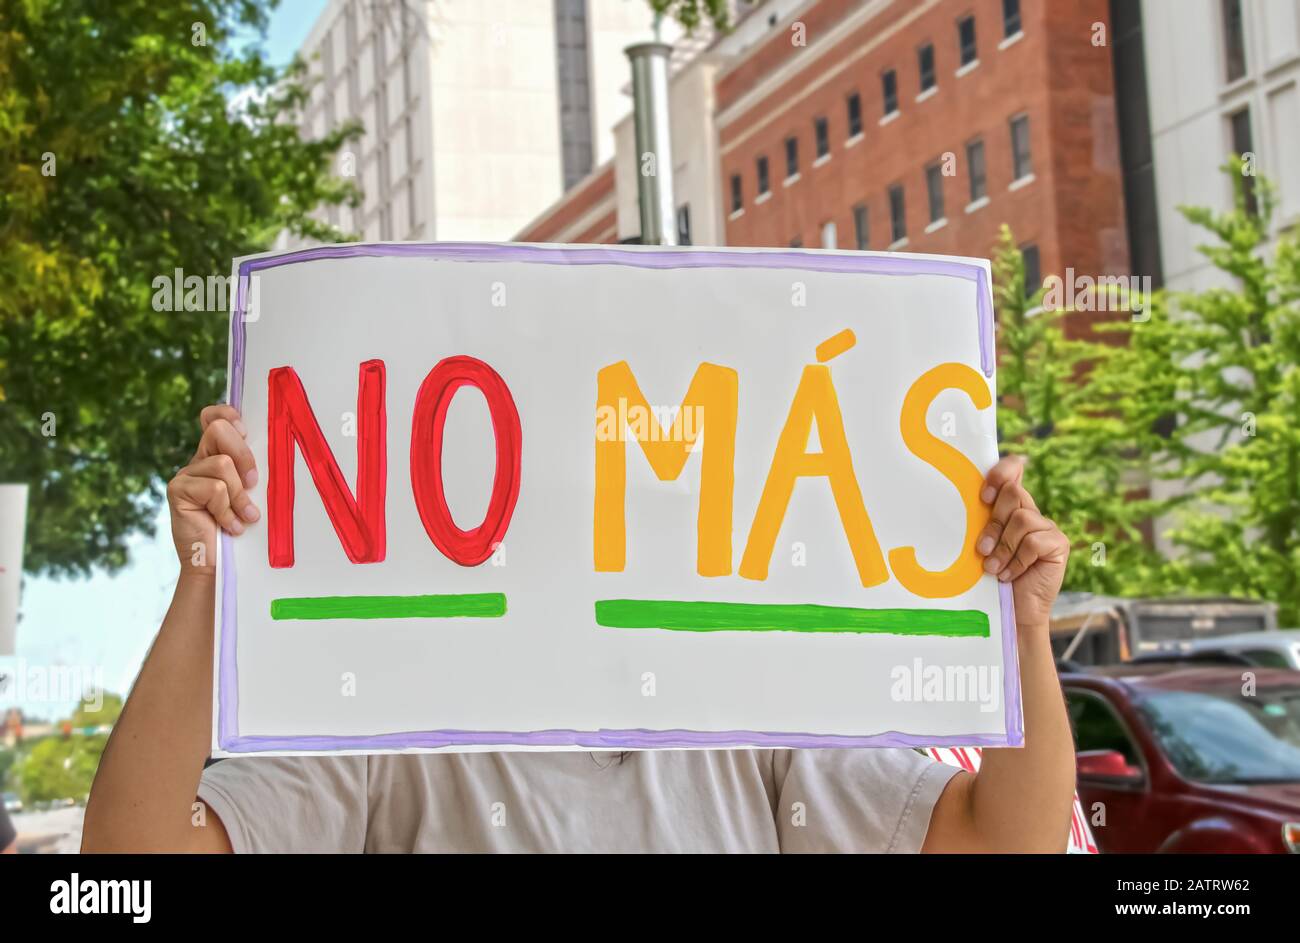 Frau, die sich meldet, dass kein Mas - Spanisch für mehr - vor ihrem Gesicht mit hohen Gebäuden und Autos im Hintergrund und einem weiteren Protest steht Stockfoto